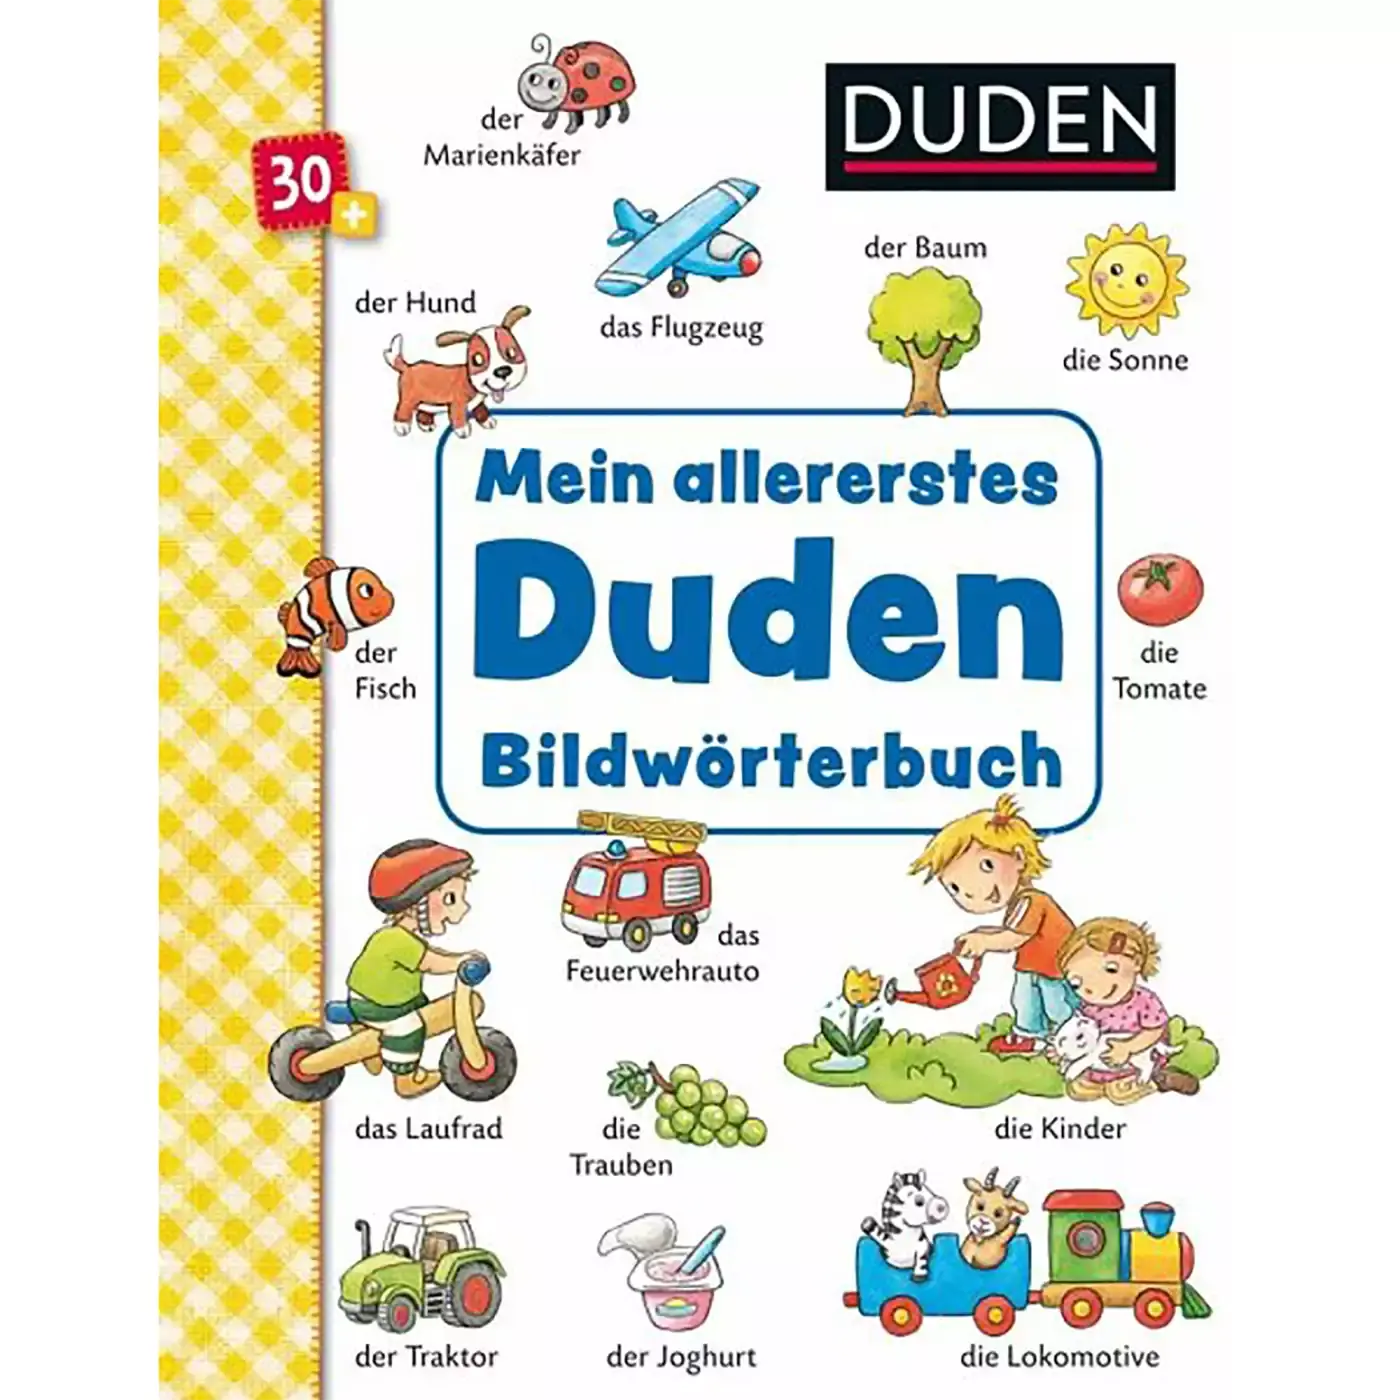 Mein allererstes Duden Bildwörterbuch Sauerländer 2000577522002 3